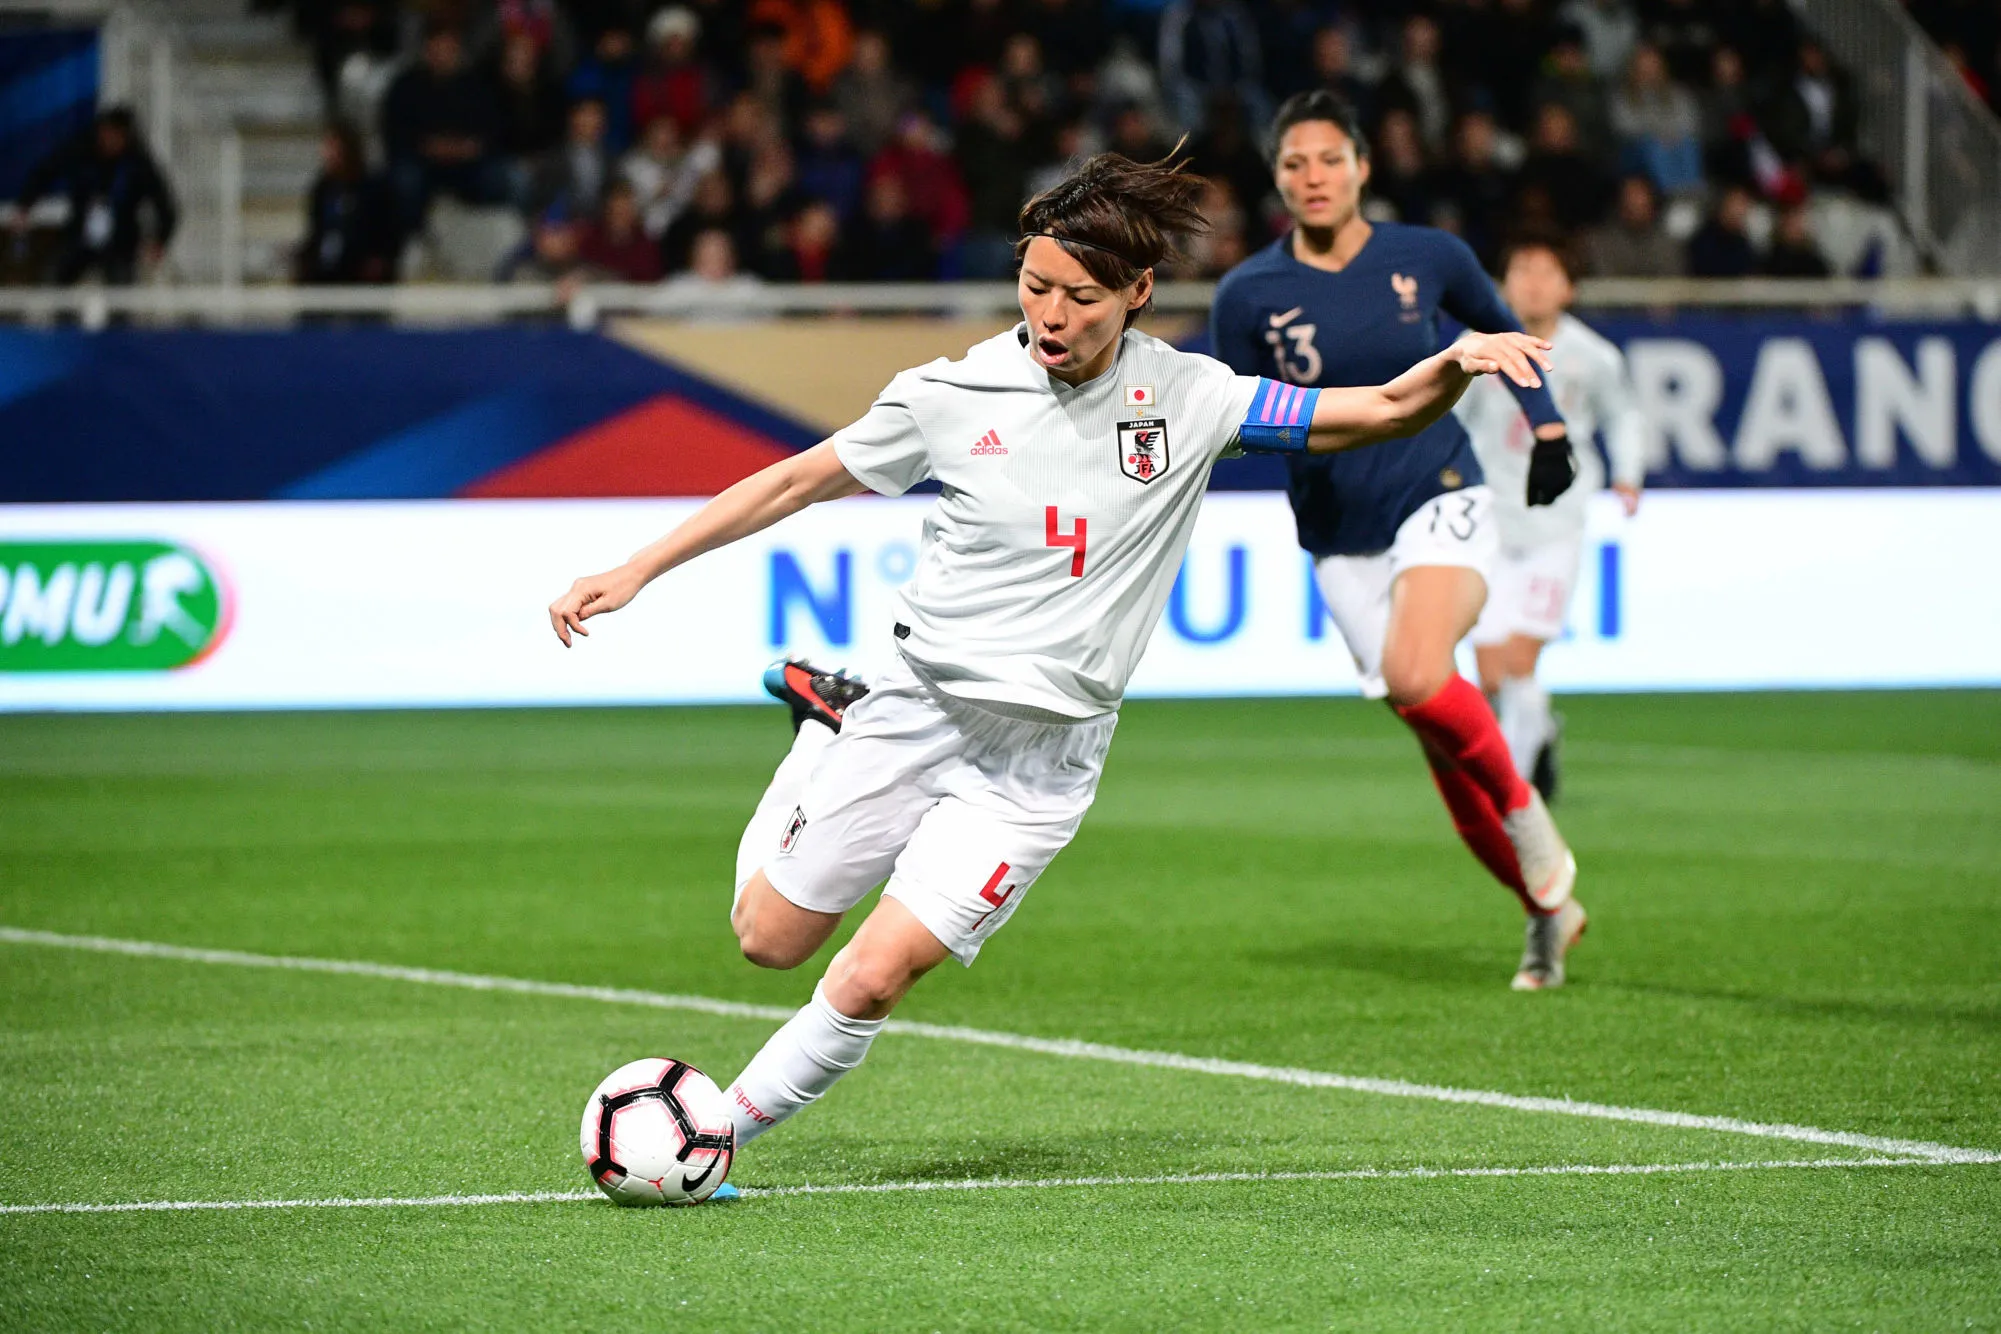 Pronostic Argentine Japon : Analyse, prono et cotes du match de la Coupe du monde féminine 2019